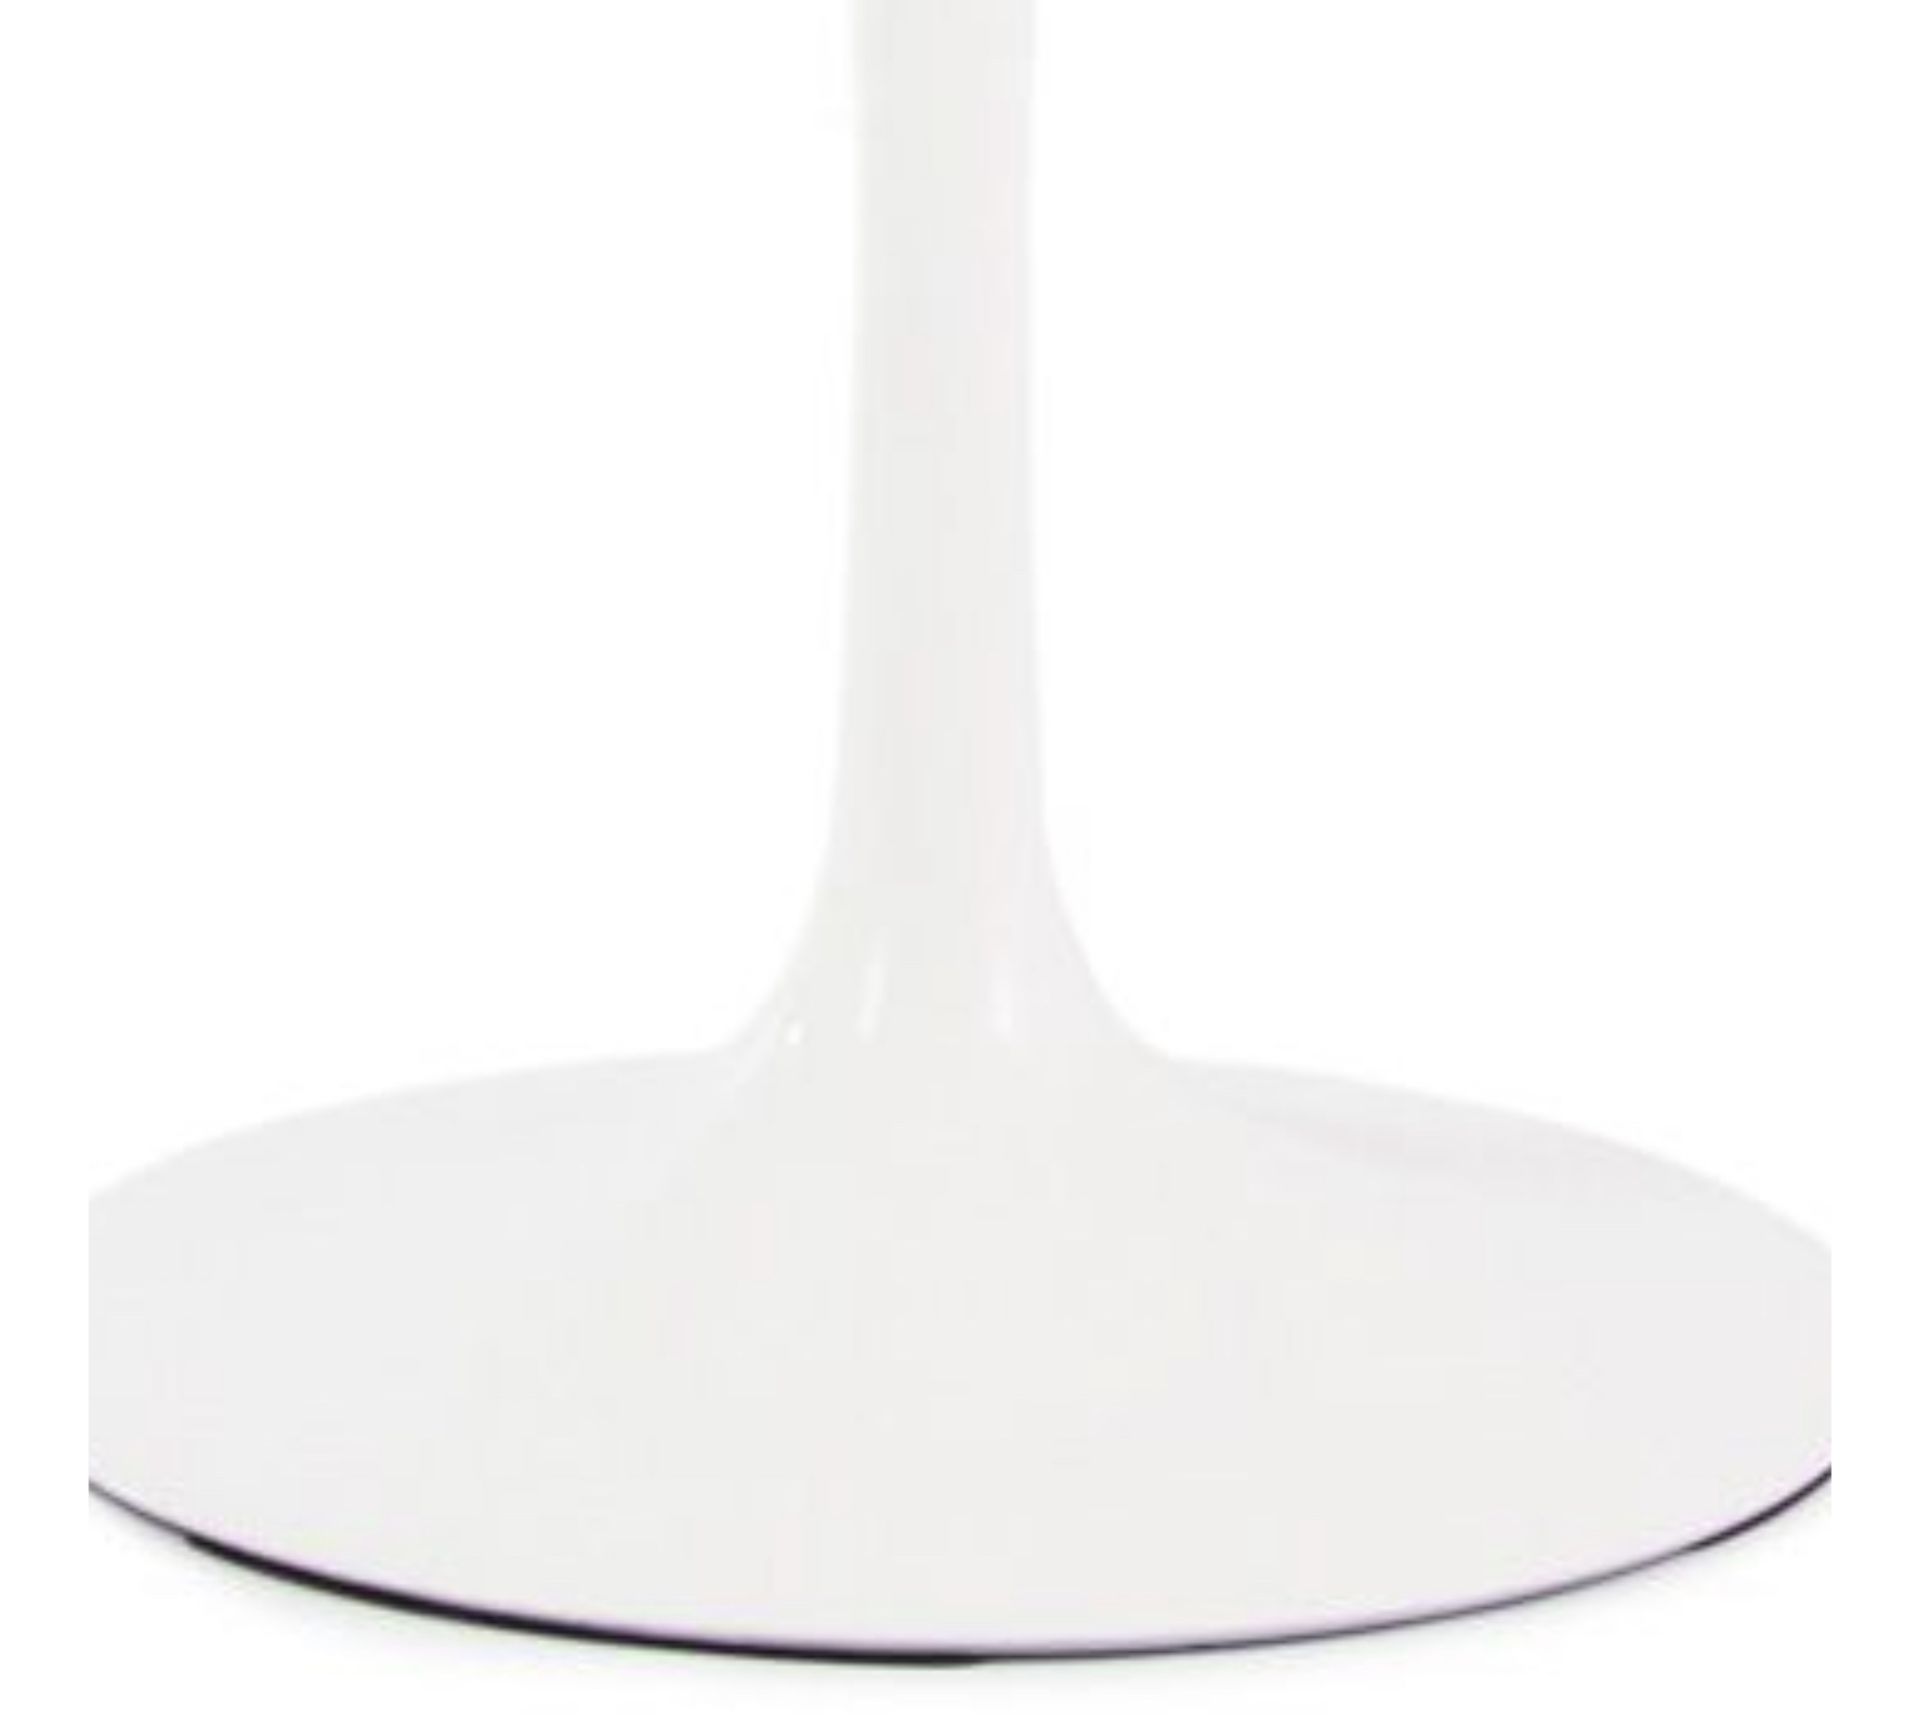 Tulip Eero Saarinen Inspired Table, 90cm - NEW - Image 9 of 9